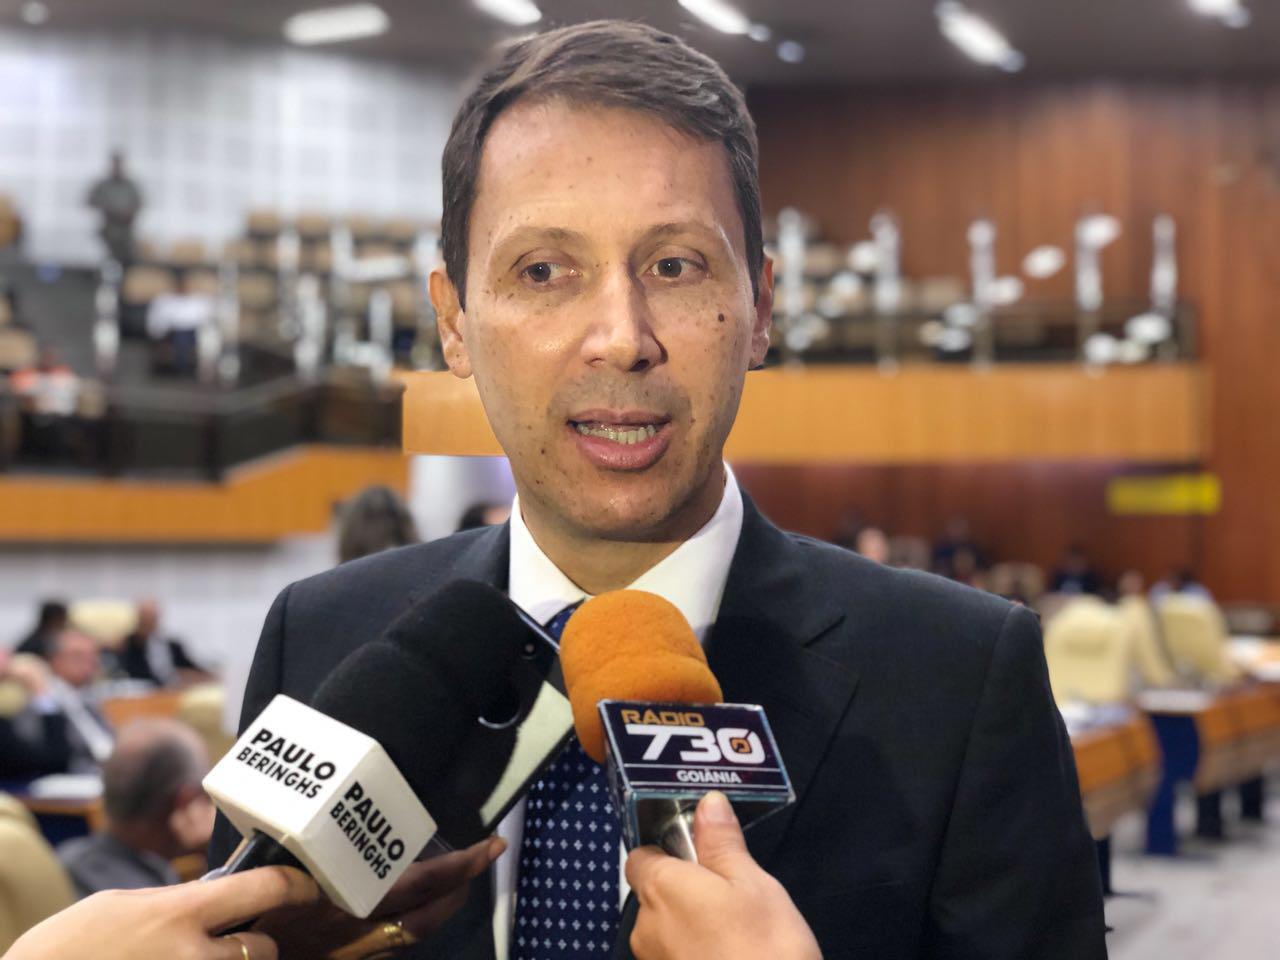 Andrey Azeredo fala sobre o Plano Diretor de Goiânia e as eleições em Goiás 